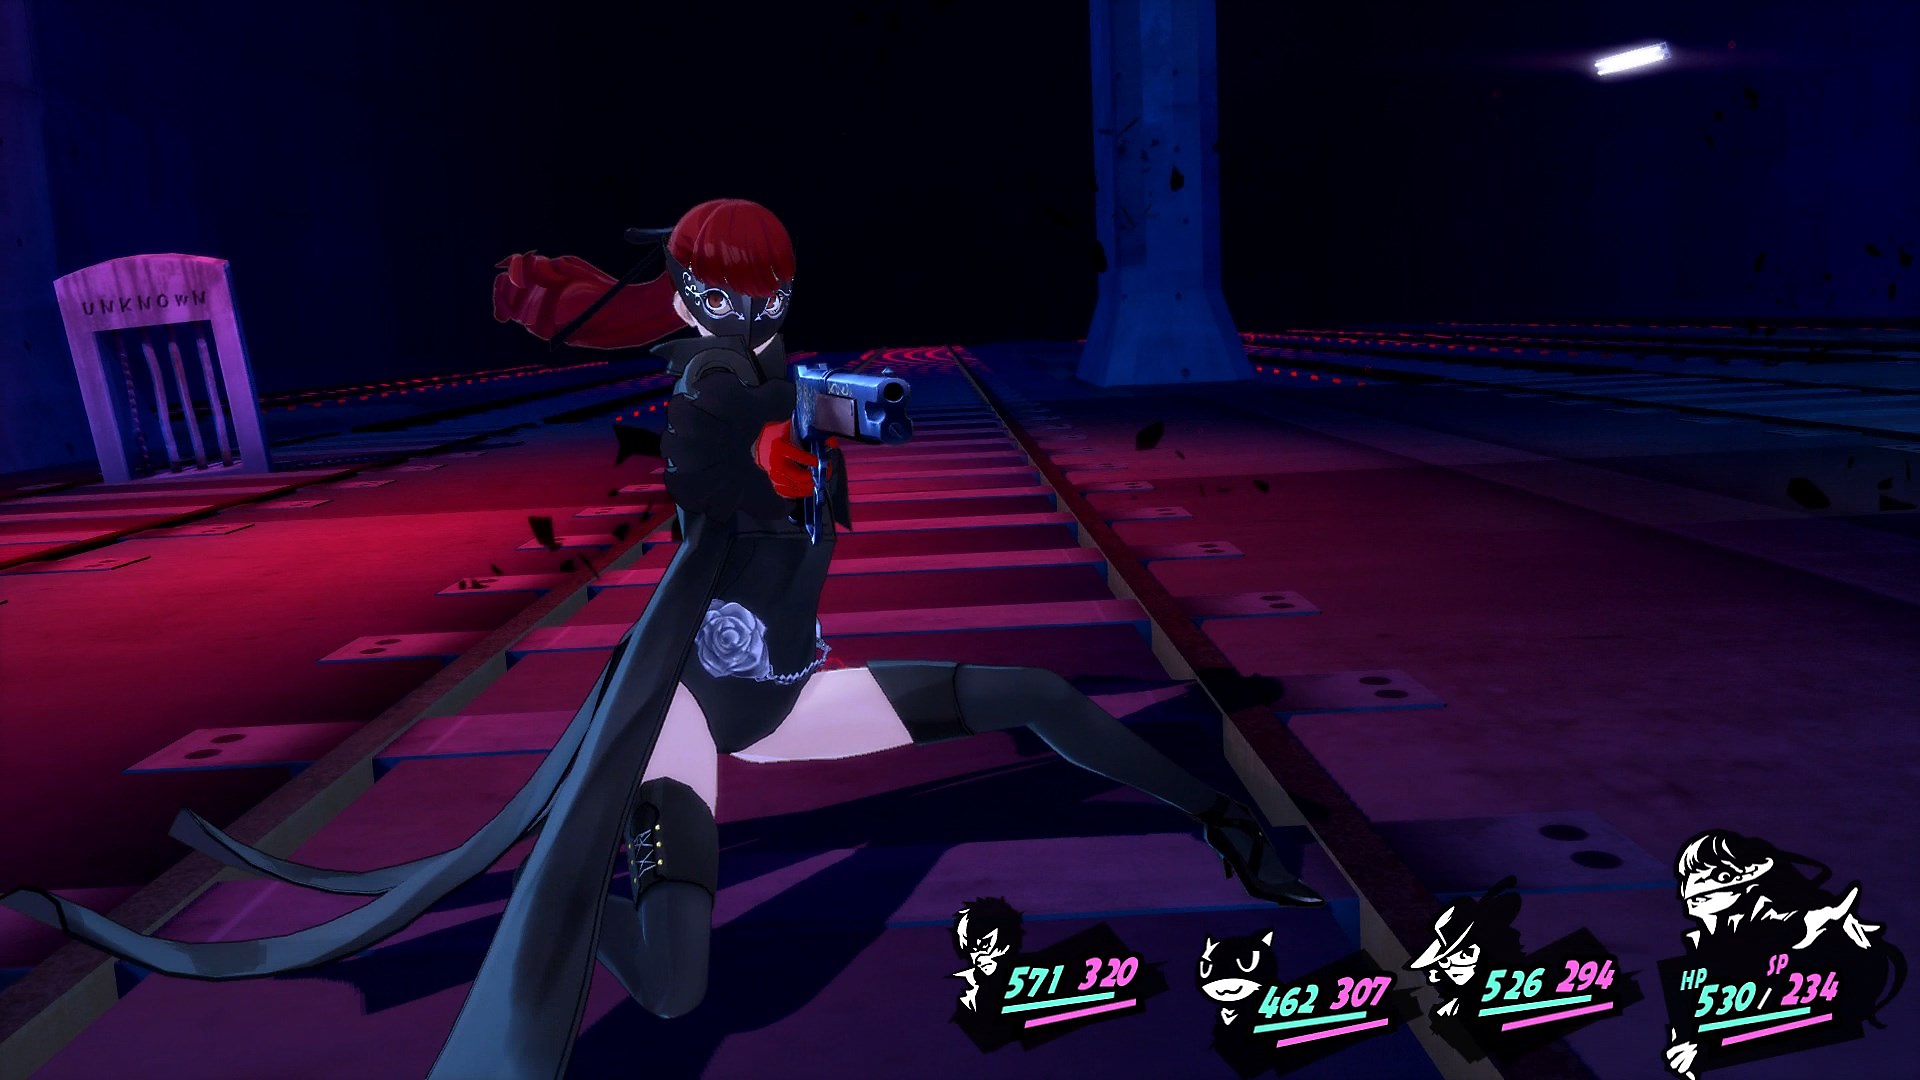 Persona 5 Royal – снимок экрана с игровым процессом